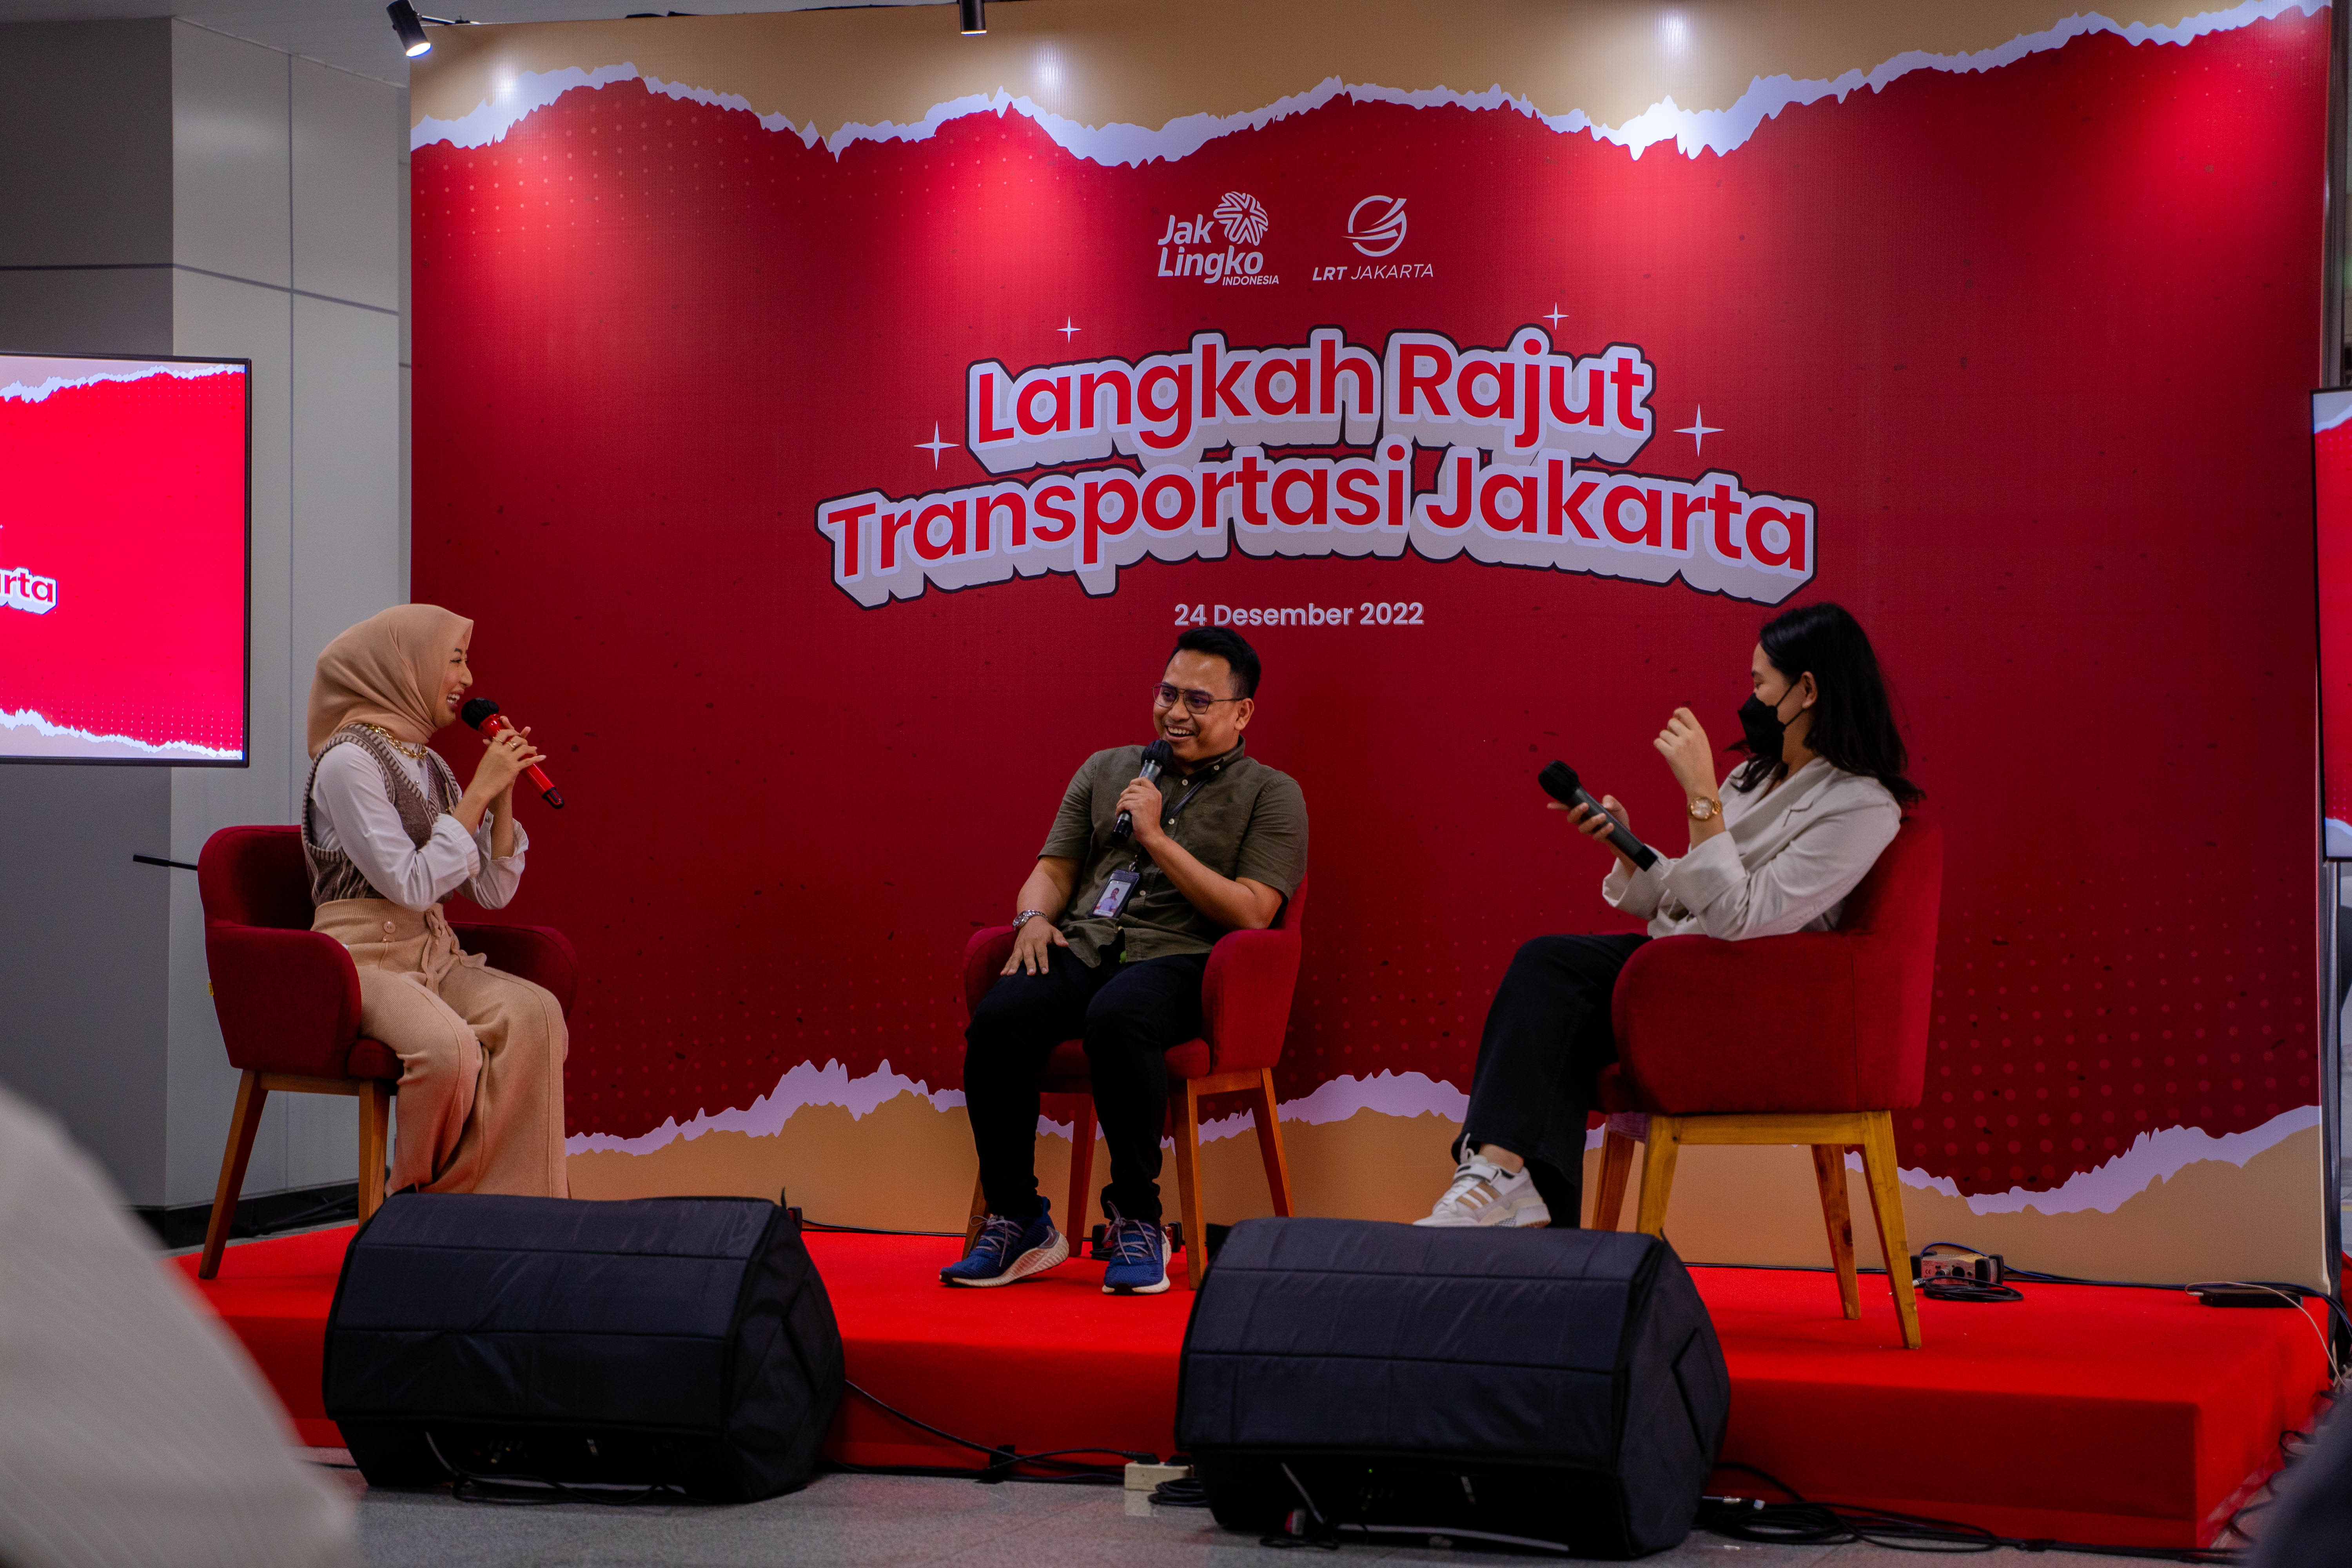 Langkah Rajut Transportasi Jakarta 2022